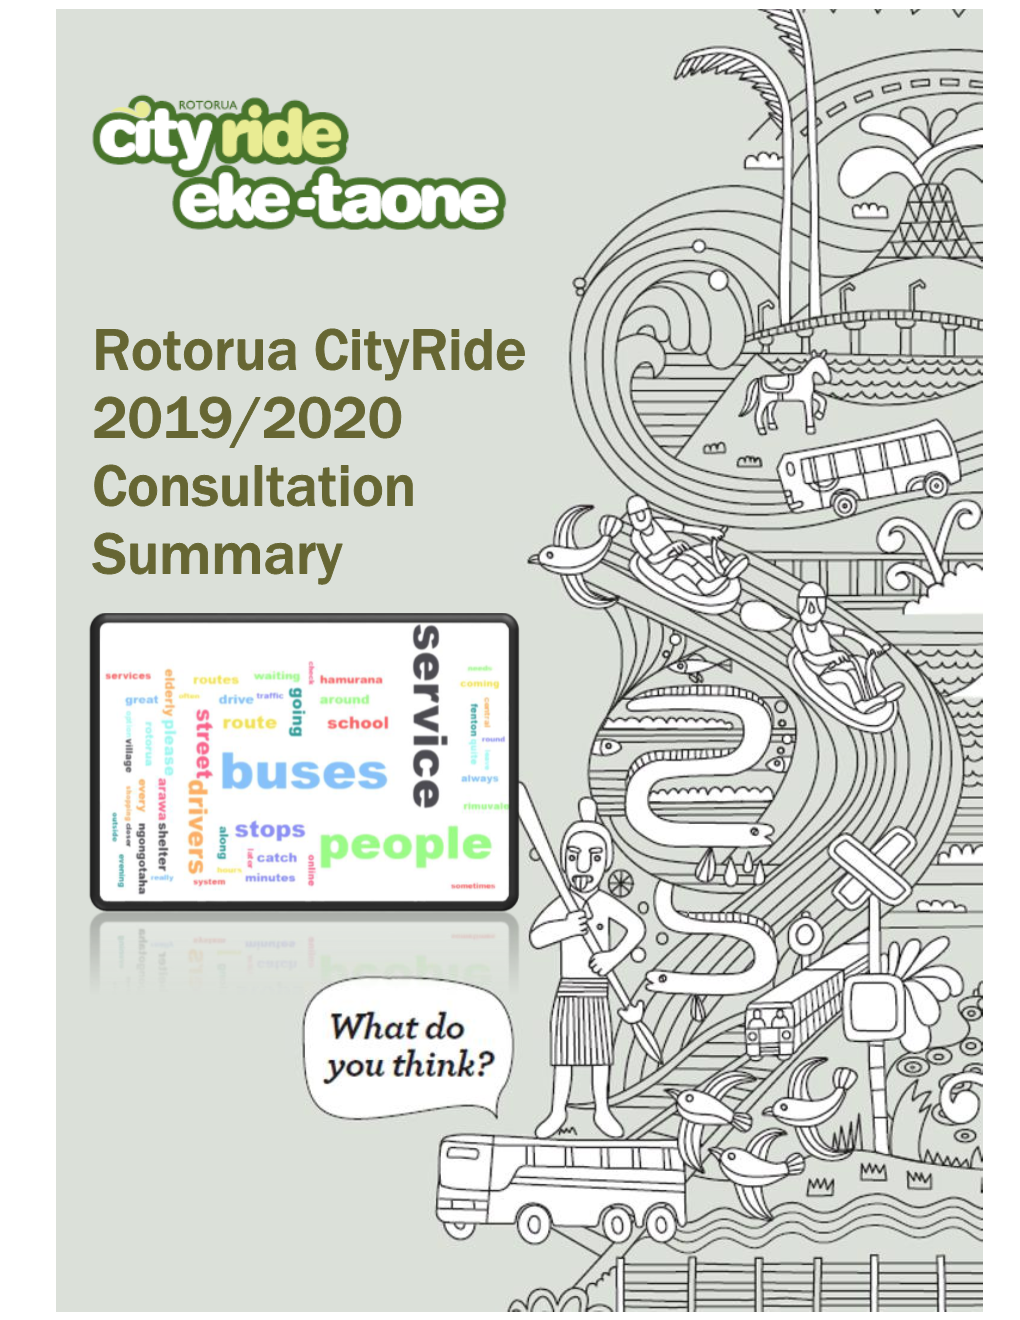 Rotorua Cityride 2019/2020 Consultation Summary